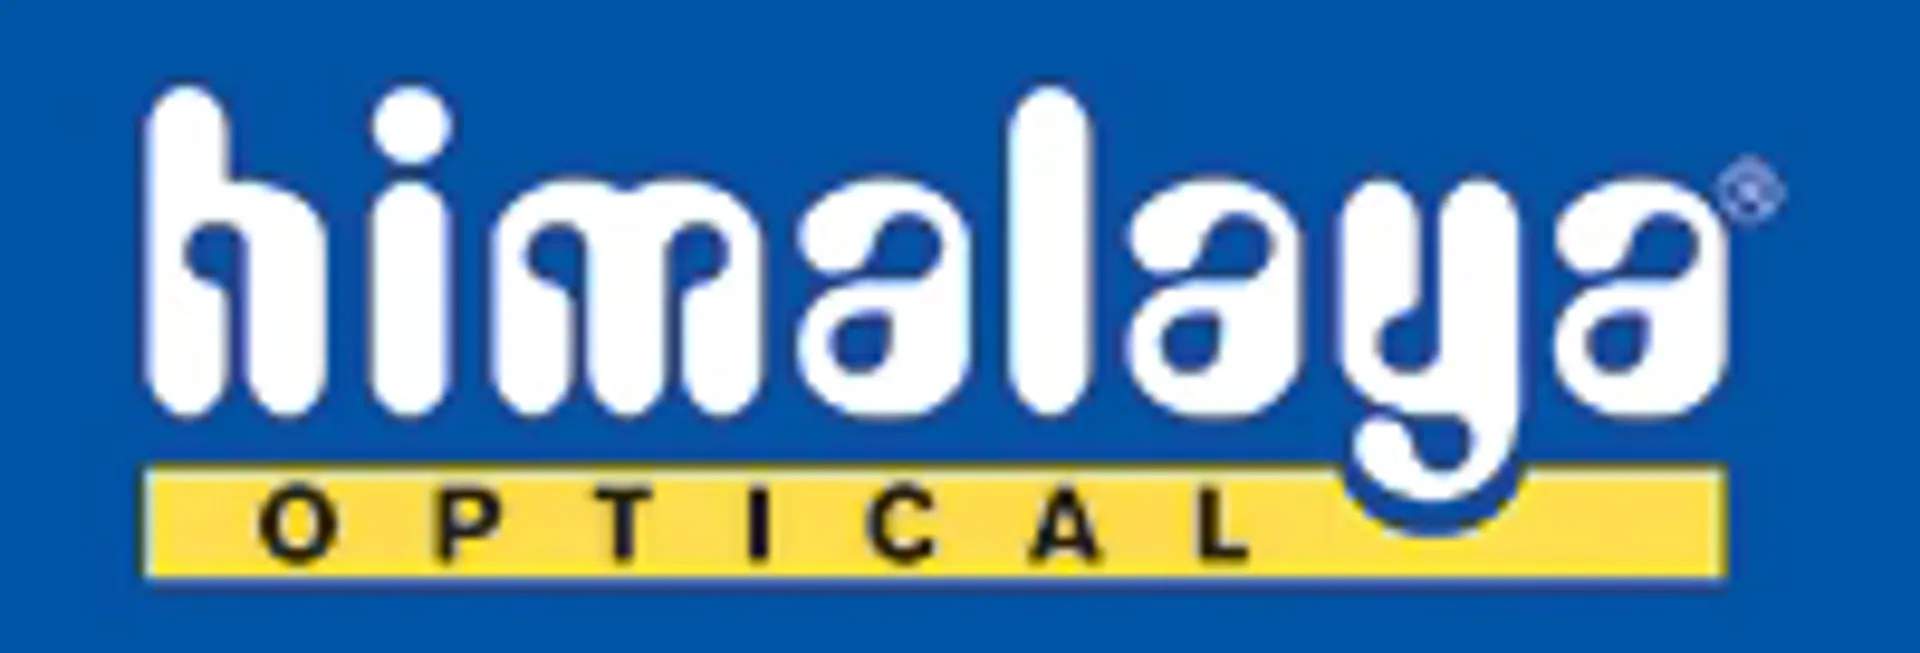 HIMALAYA OPTICAL logo. Current weekly ad